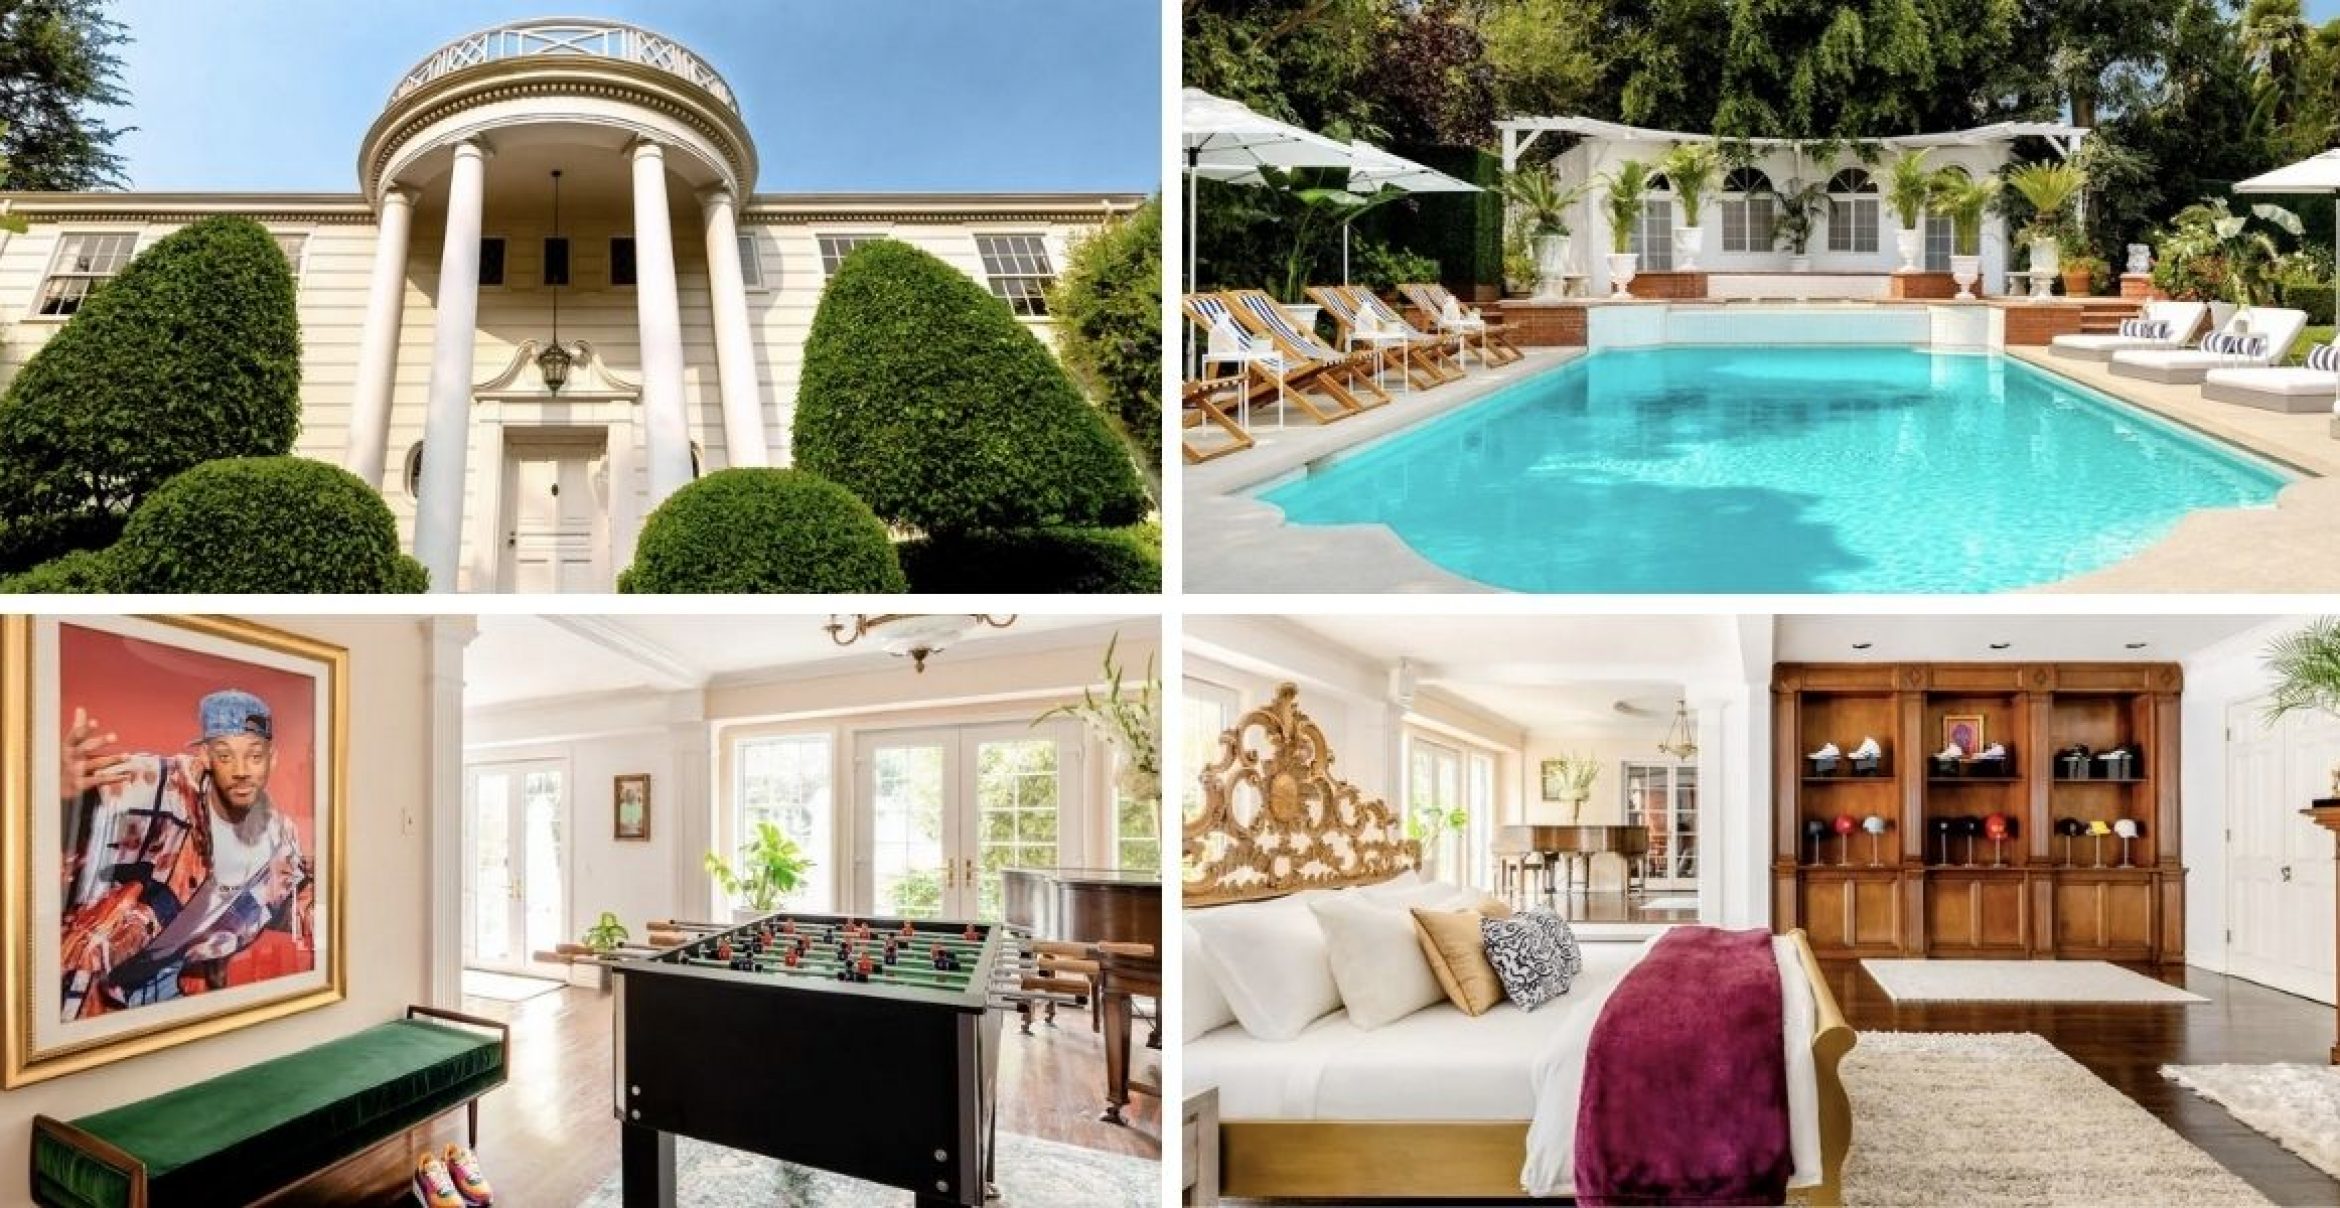 Will Smith als Host: Die Villa aus „Der Prinz von Bel-Air“ gibt es jetzt auf Airbnb